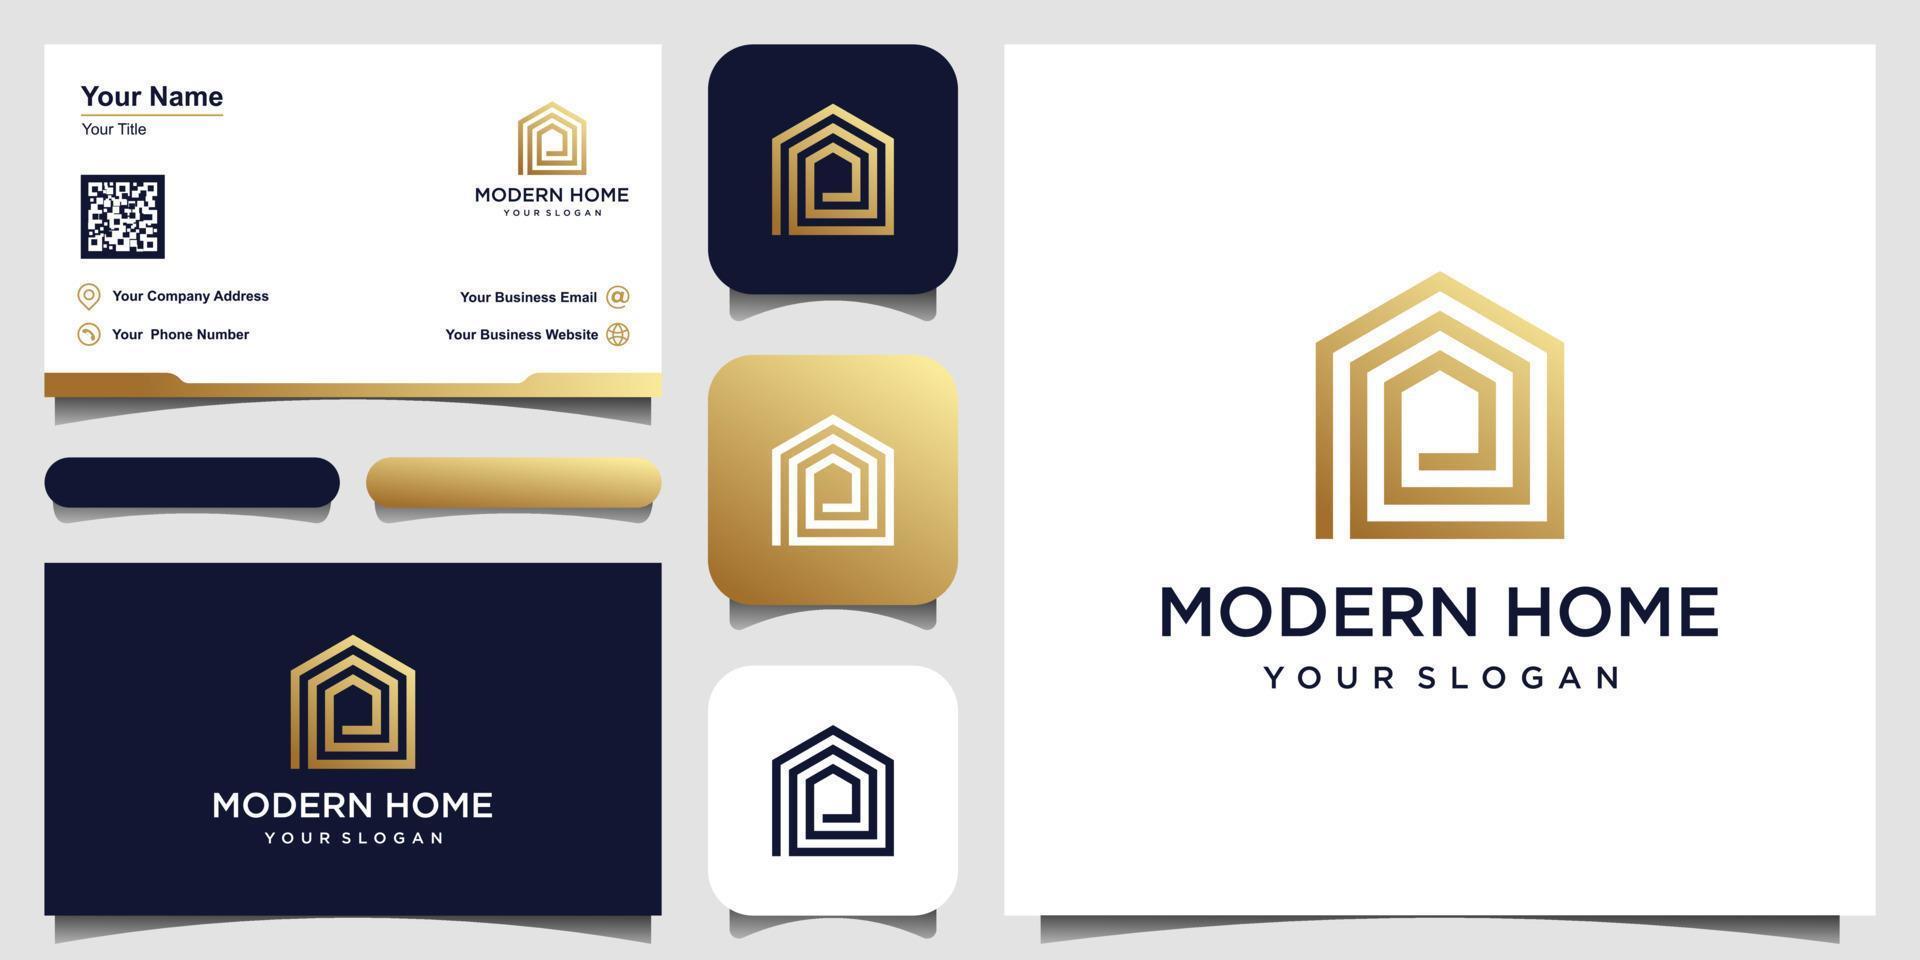 logotipo moderno vetor doméstico para construção, casa, imóveis, construção, propriedade. modelo de design de logotipo profissional moderno incrível mínimo e design de cartão de visita